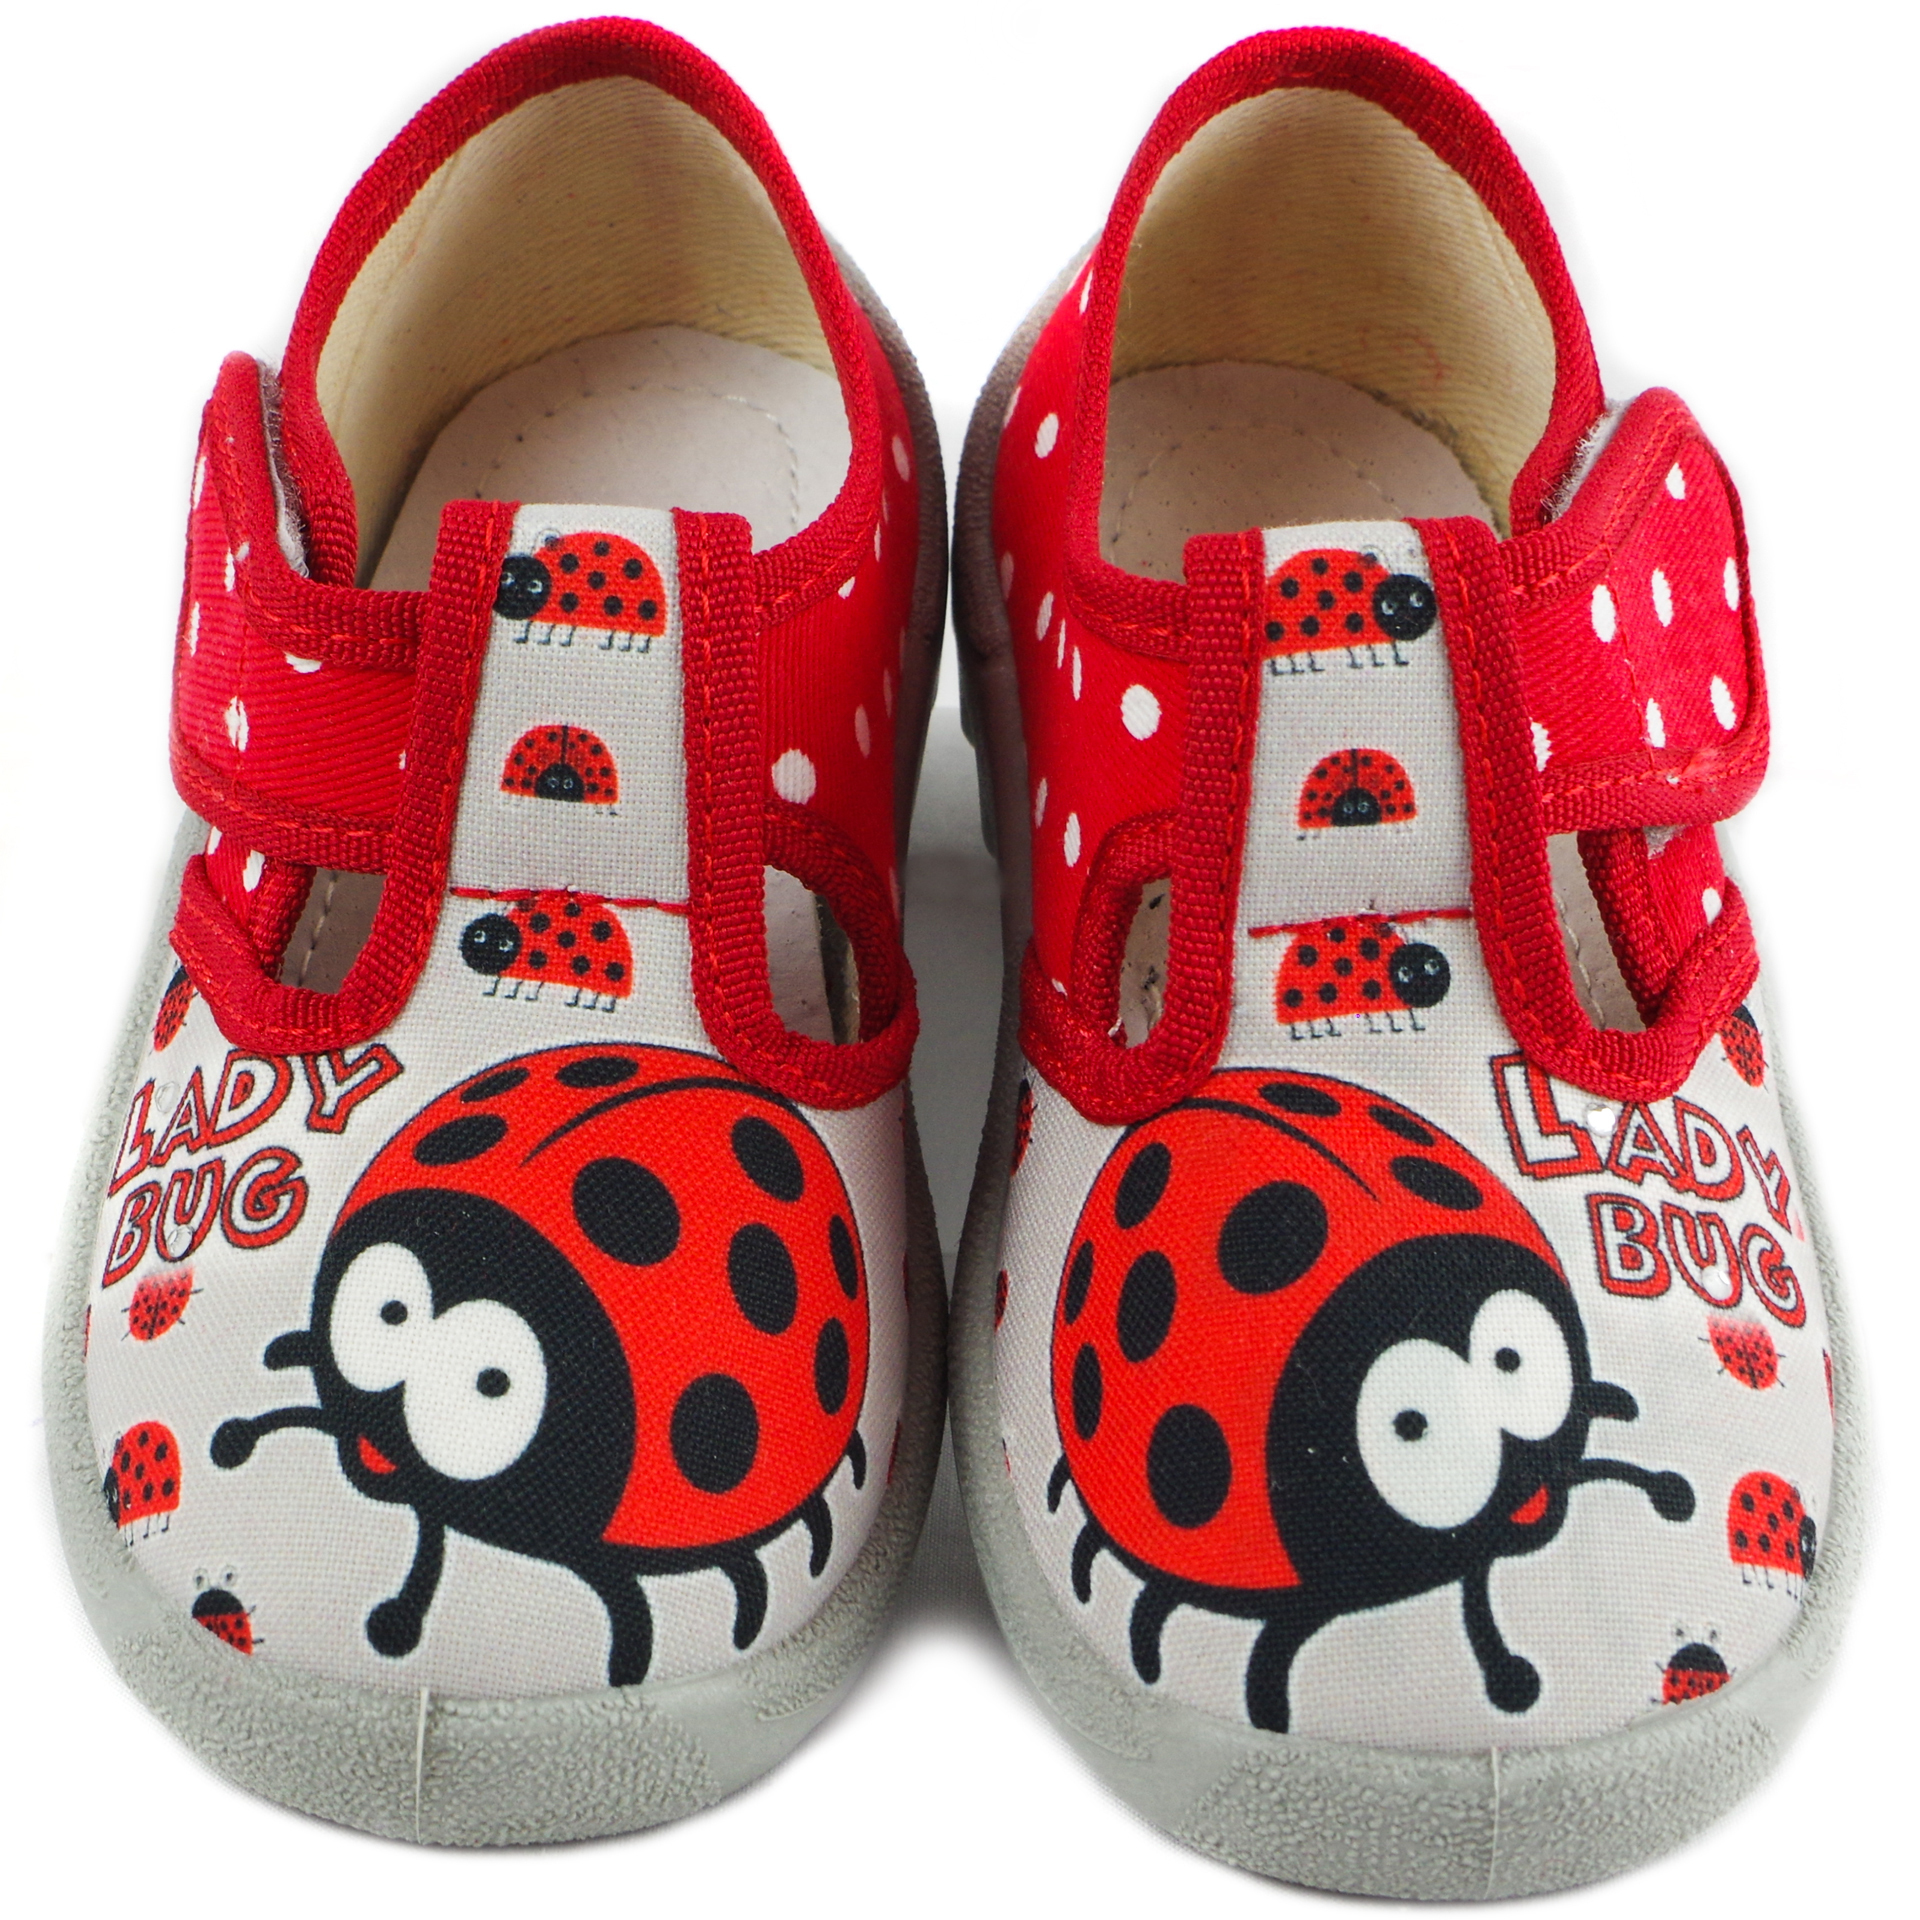 Текстильная обувь для девочек Тапочки Даша Lady Bug (1914) цвет Красный 21-27 размеры – Sole Kids. Фото 3